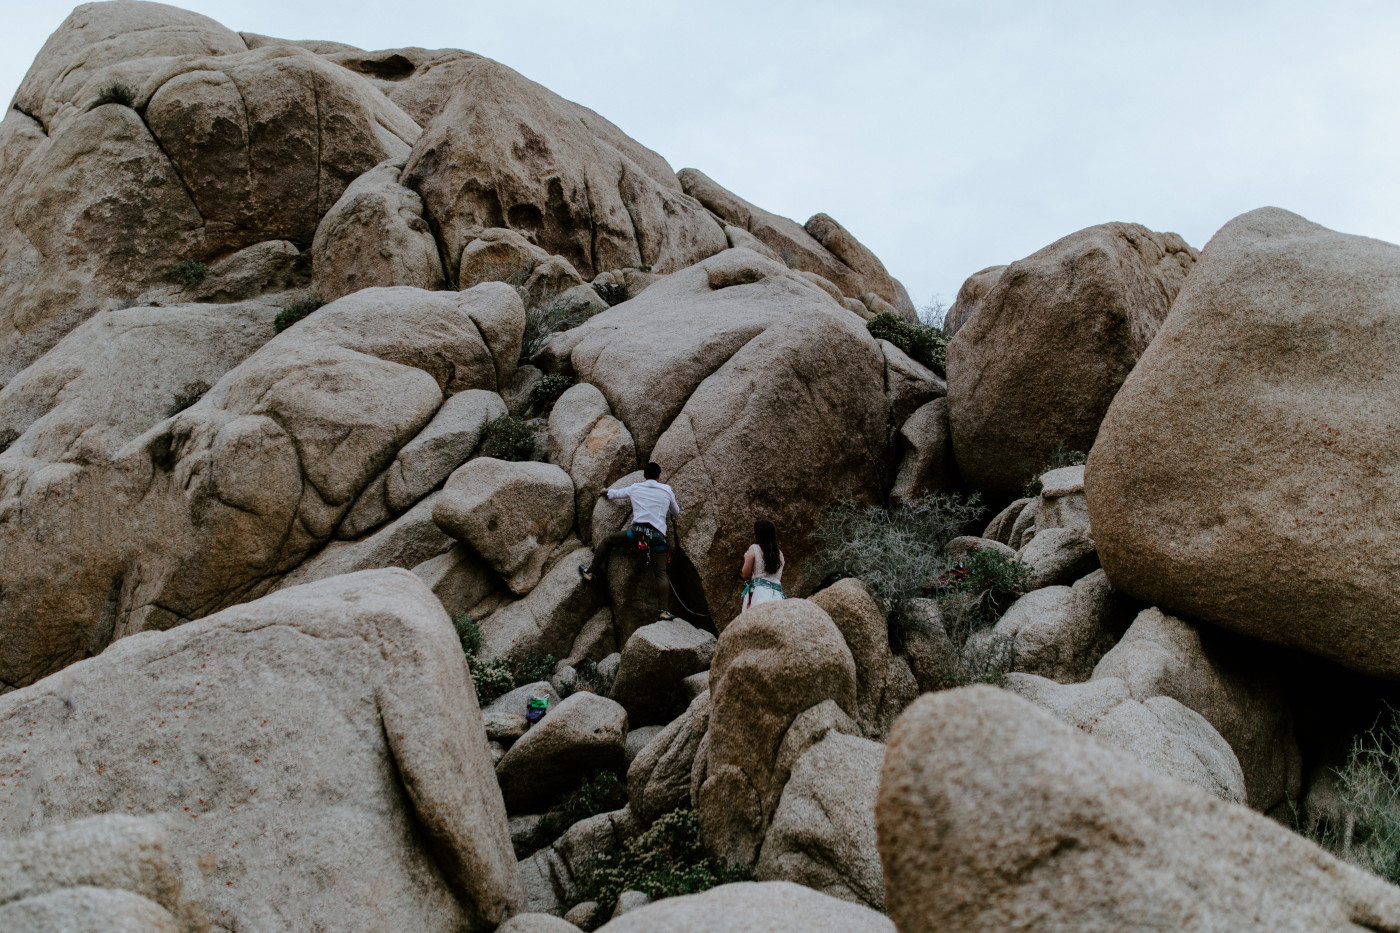 Shelby and Zack climb up the rocks of Joshua Tree.